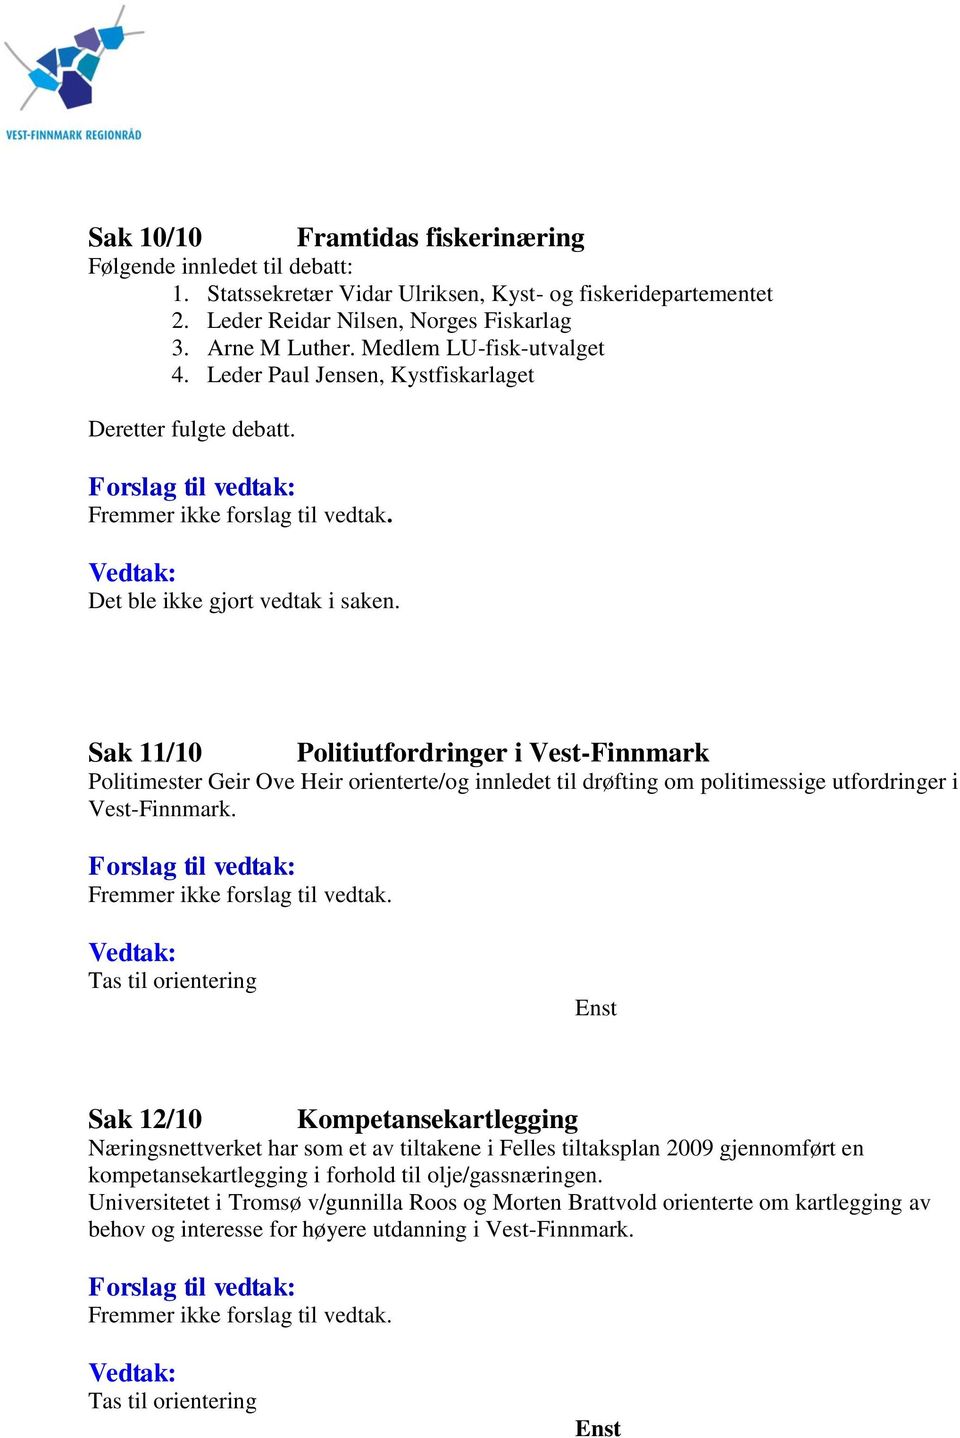 Sak 11/10 Politiutfordringer i Vest-Finnmark Politimester Geir Ove Heir orienterte/og innledet til drøfting om politimessige utfordringer i Vest-Finnmark. Fremmer ikke forslag til vedtak.